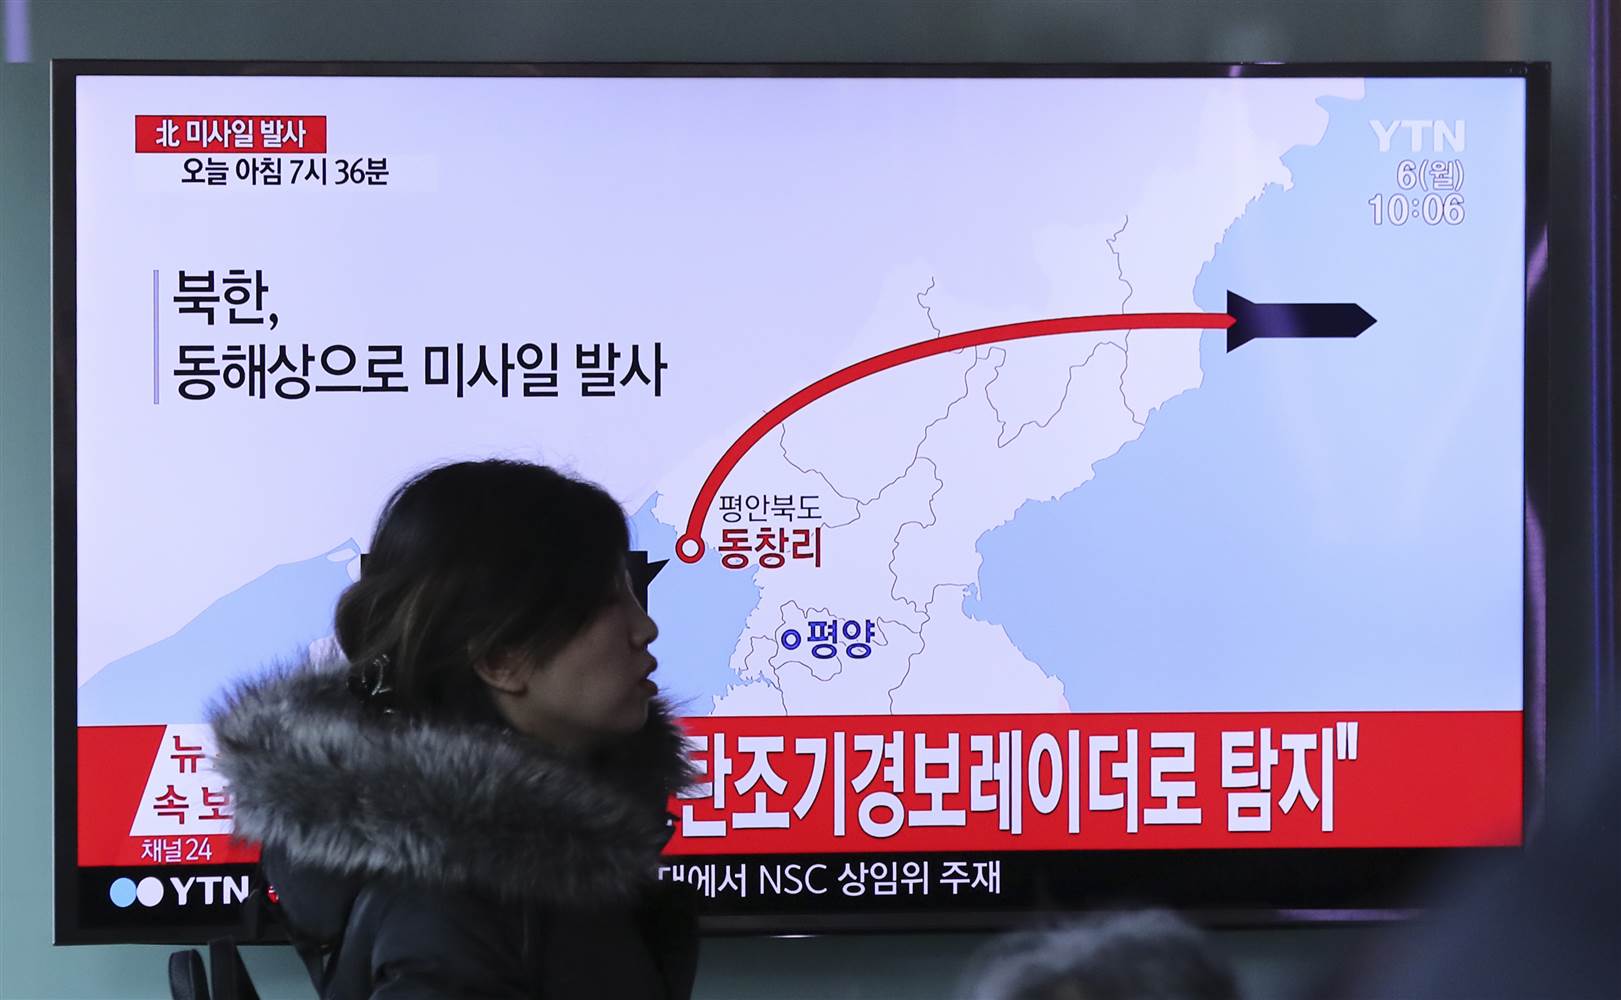 अमेरिका अब उत्तर कोरियाली क्षेप्यास्त्र सीमाभित्र आएको नेता उनको दावी